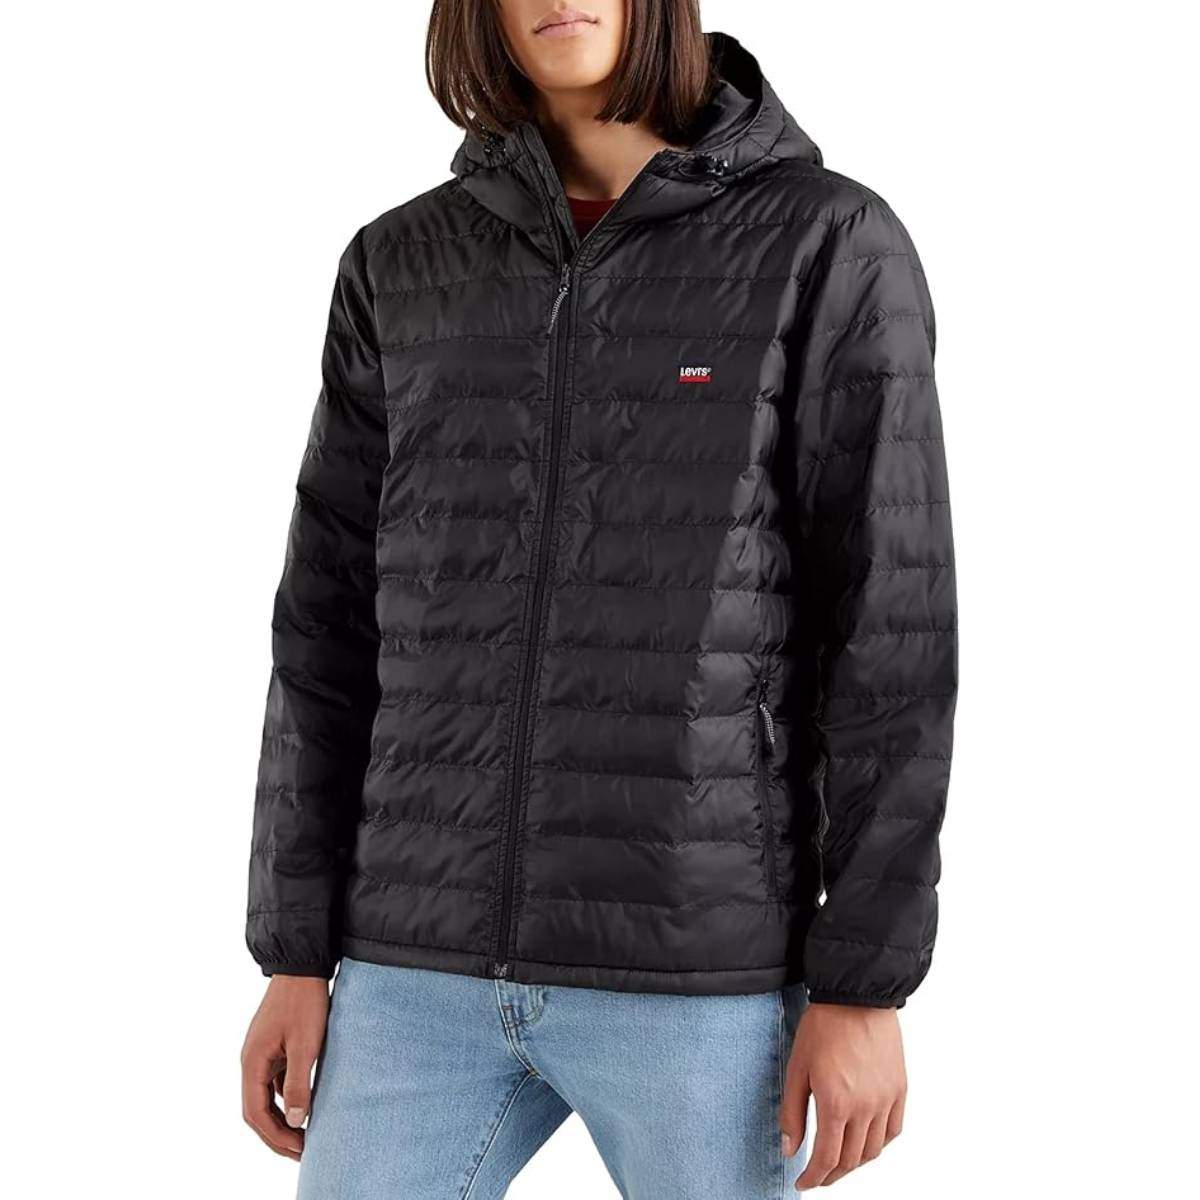 Amazon tiene la chaqueta Levi's perfecta para el invierno suave que estamos viviendo, ¡al 50% de su coste!